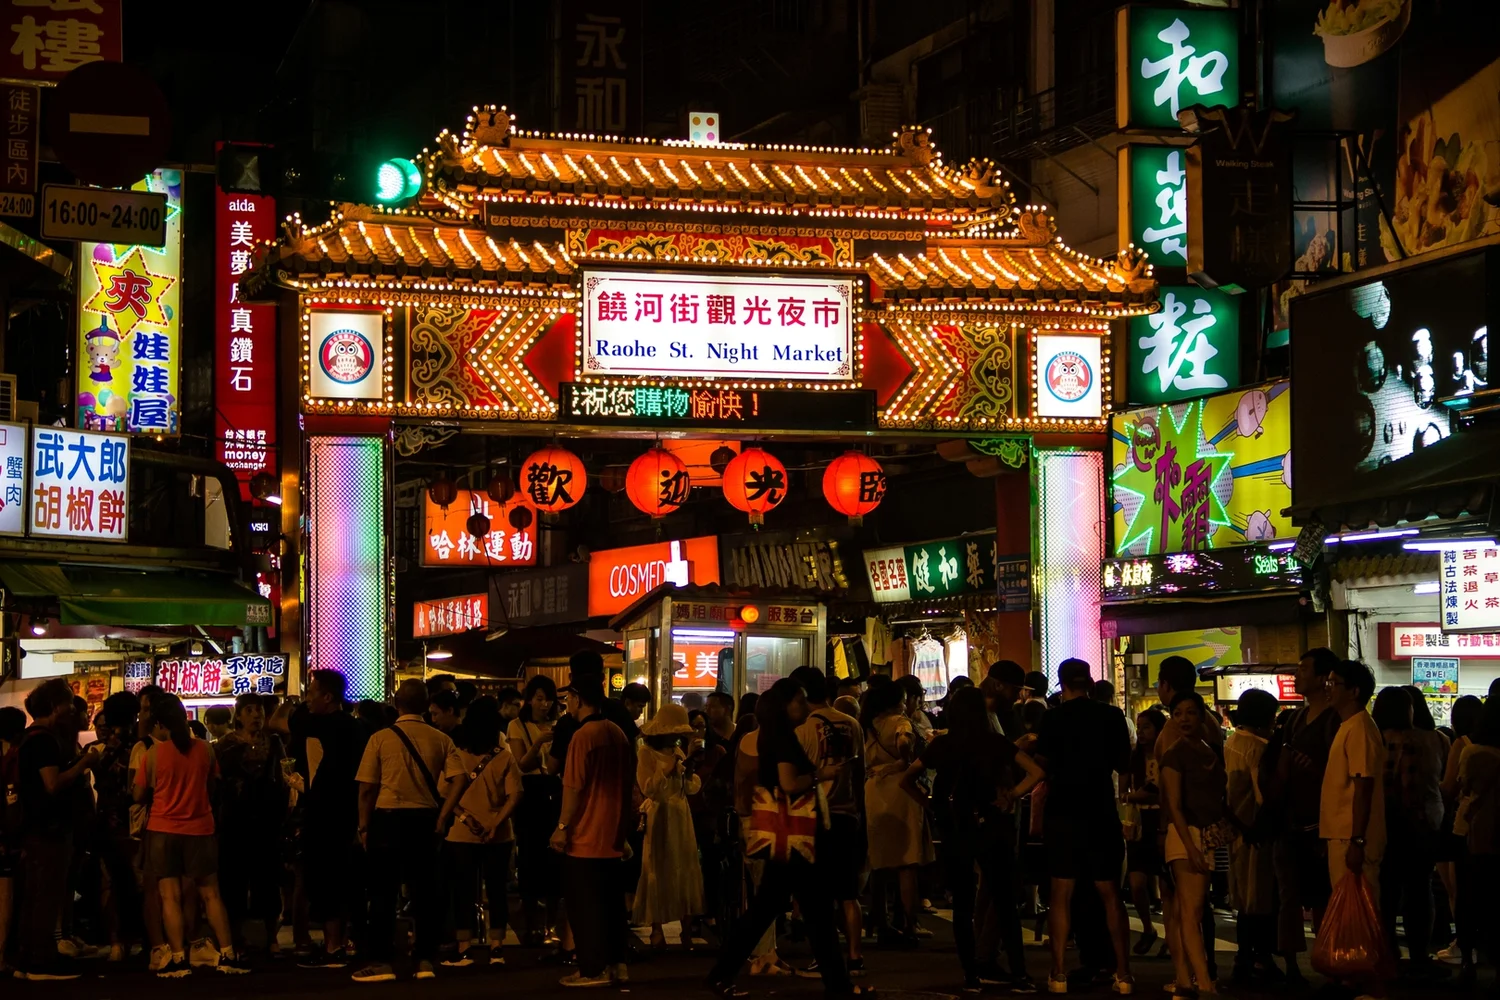 Taipei at Night: Din Tai Fung Dinner & Raohe Street Night Market Guided Tour